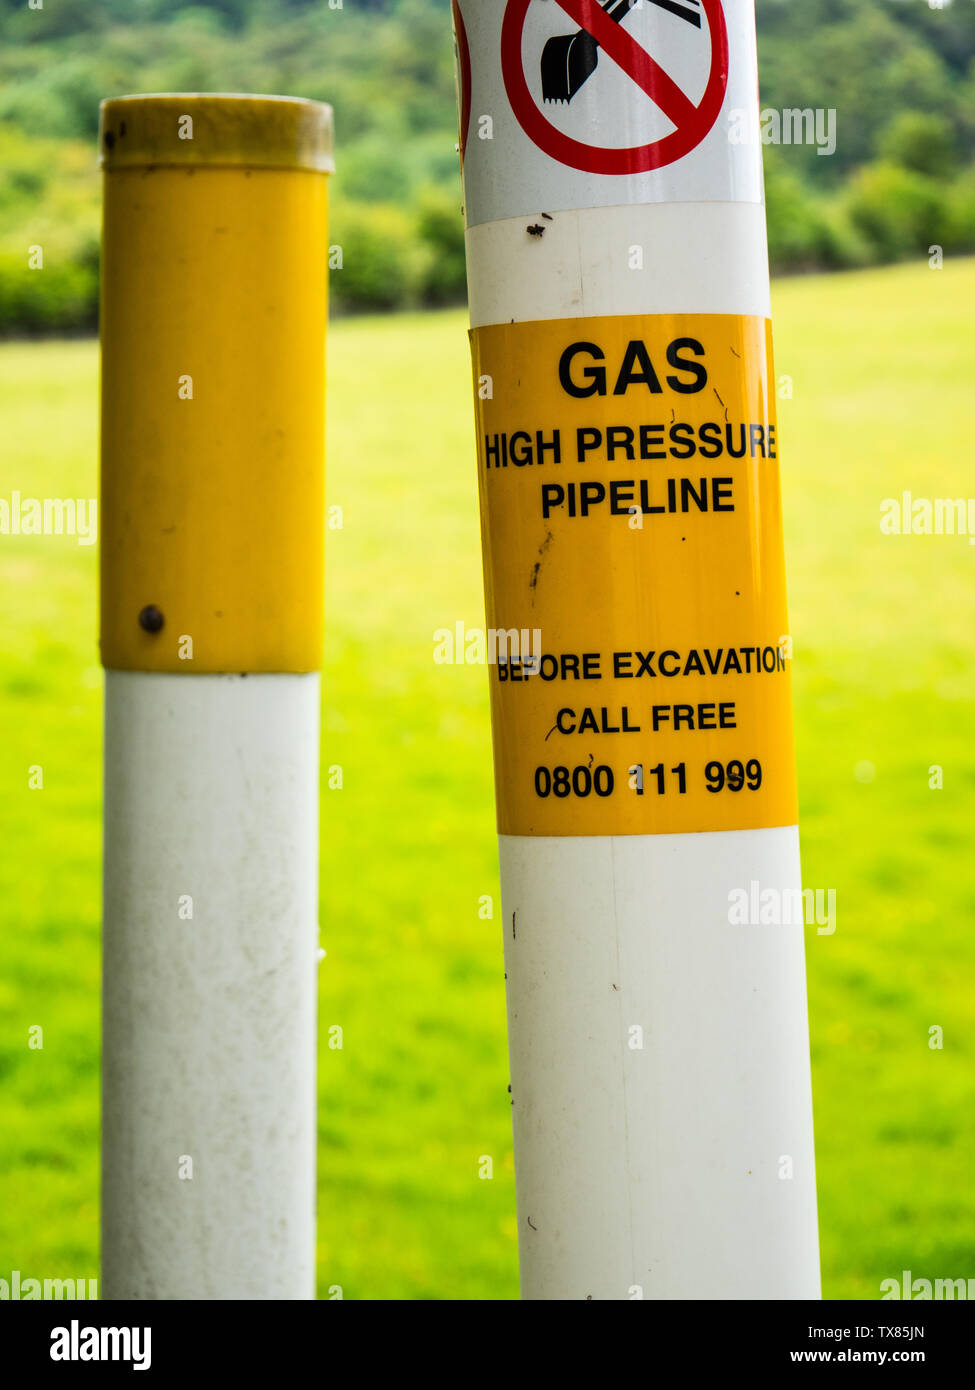 Indicatore di avvertimento per la pressione alta Gas Pipeline, Streatley, Berkshire, Inghilterra, Regno Unito, GB. Foto Stock